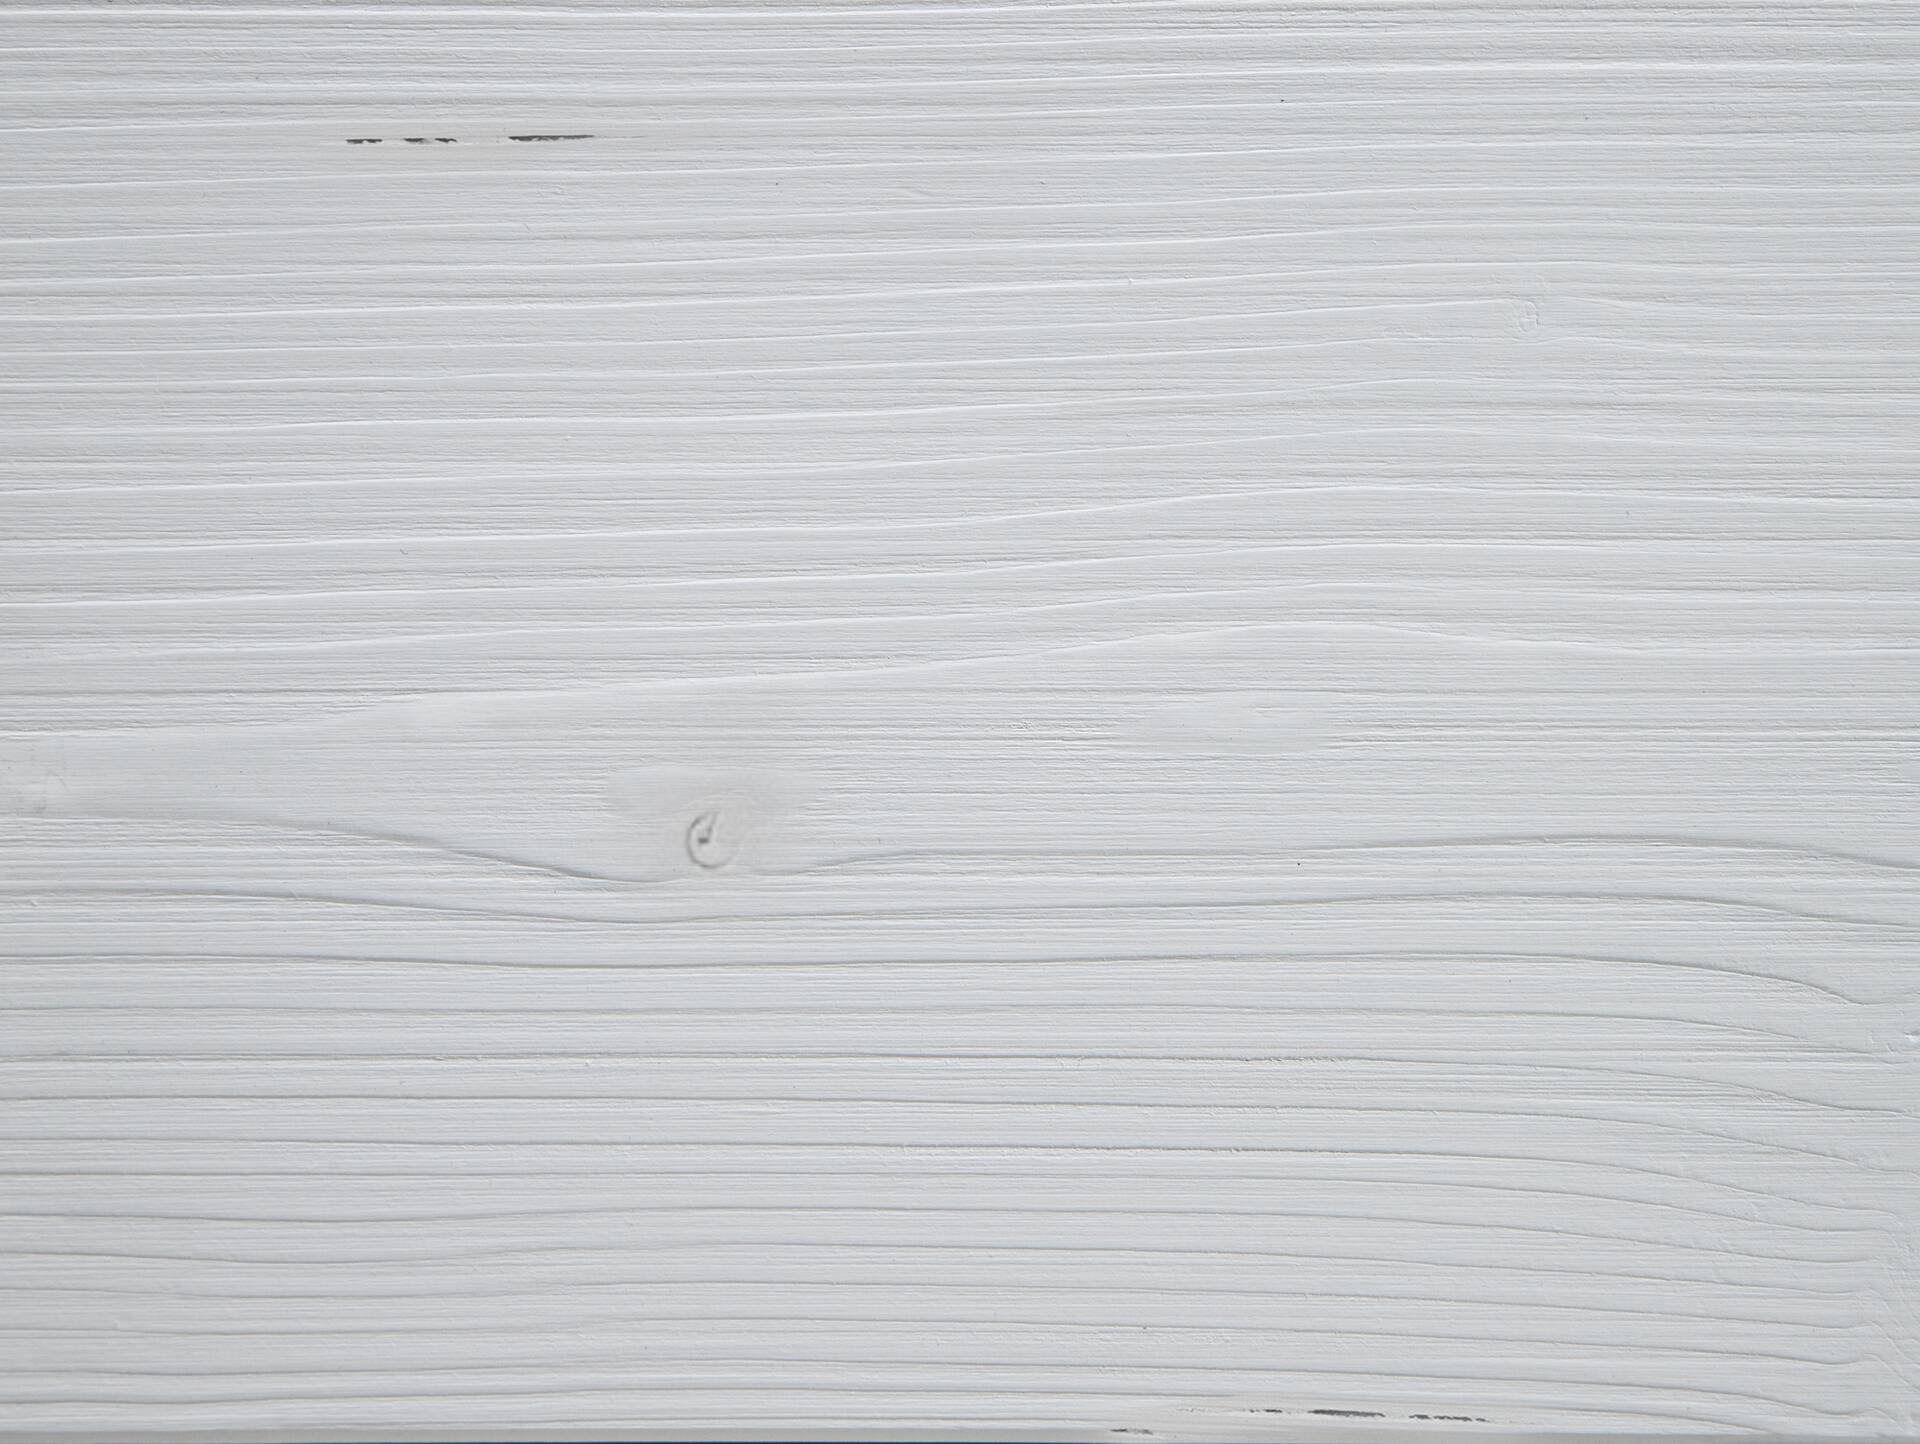 LUKY Kufenbett mit Polsterkopfteil, Material Massivholz, Fichte massiv, Kufen schwarz 160 x 220 cm | weiss | Stoff Braun